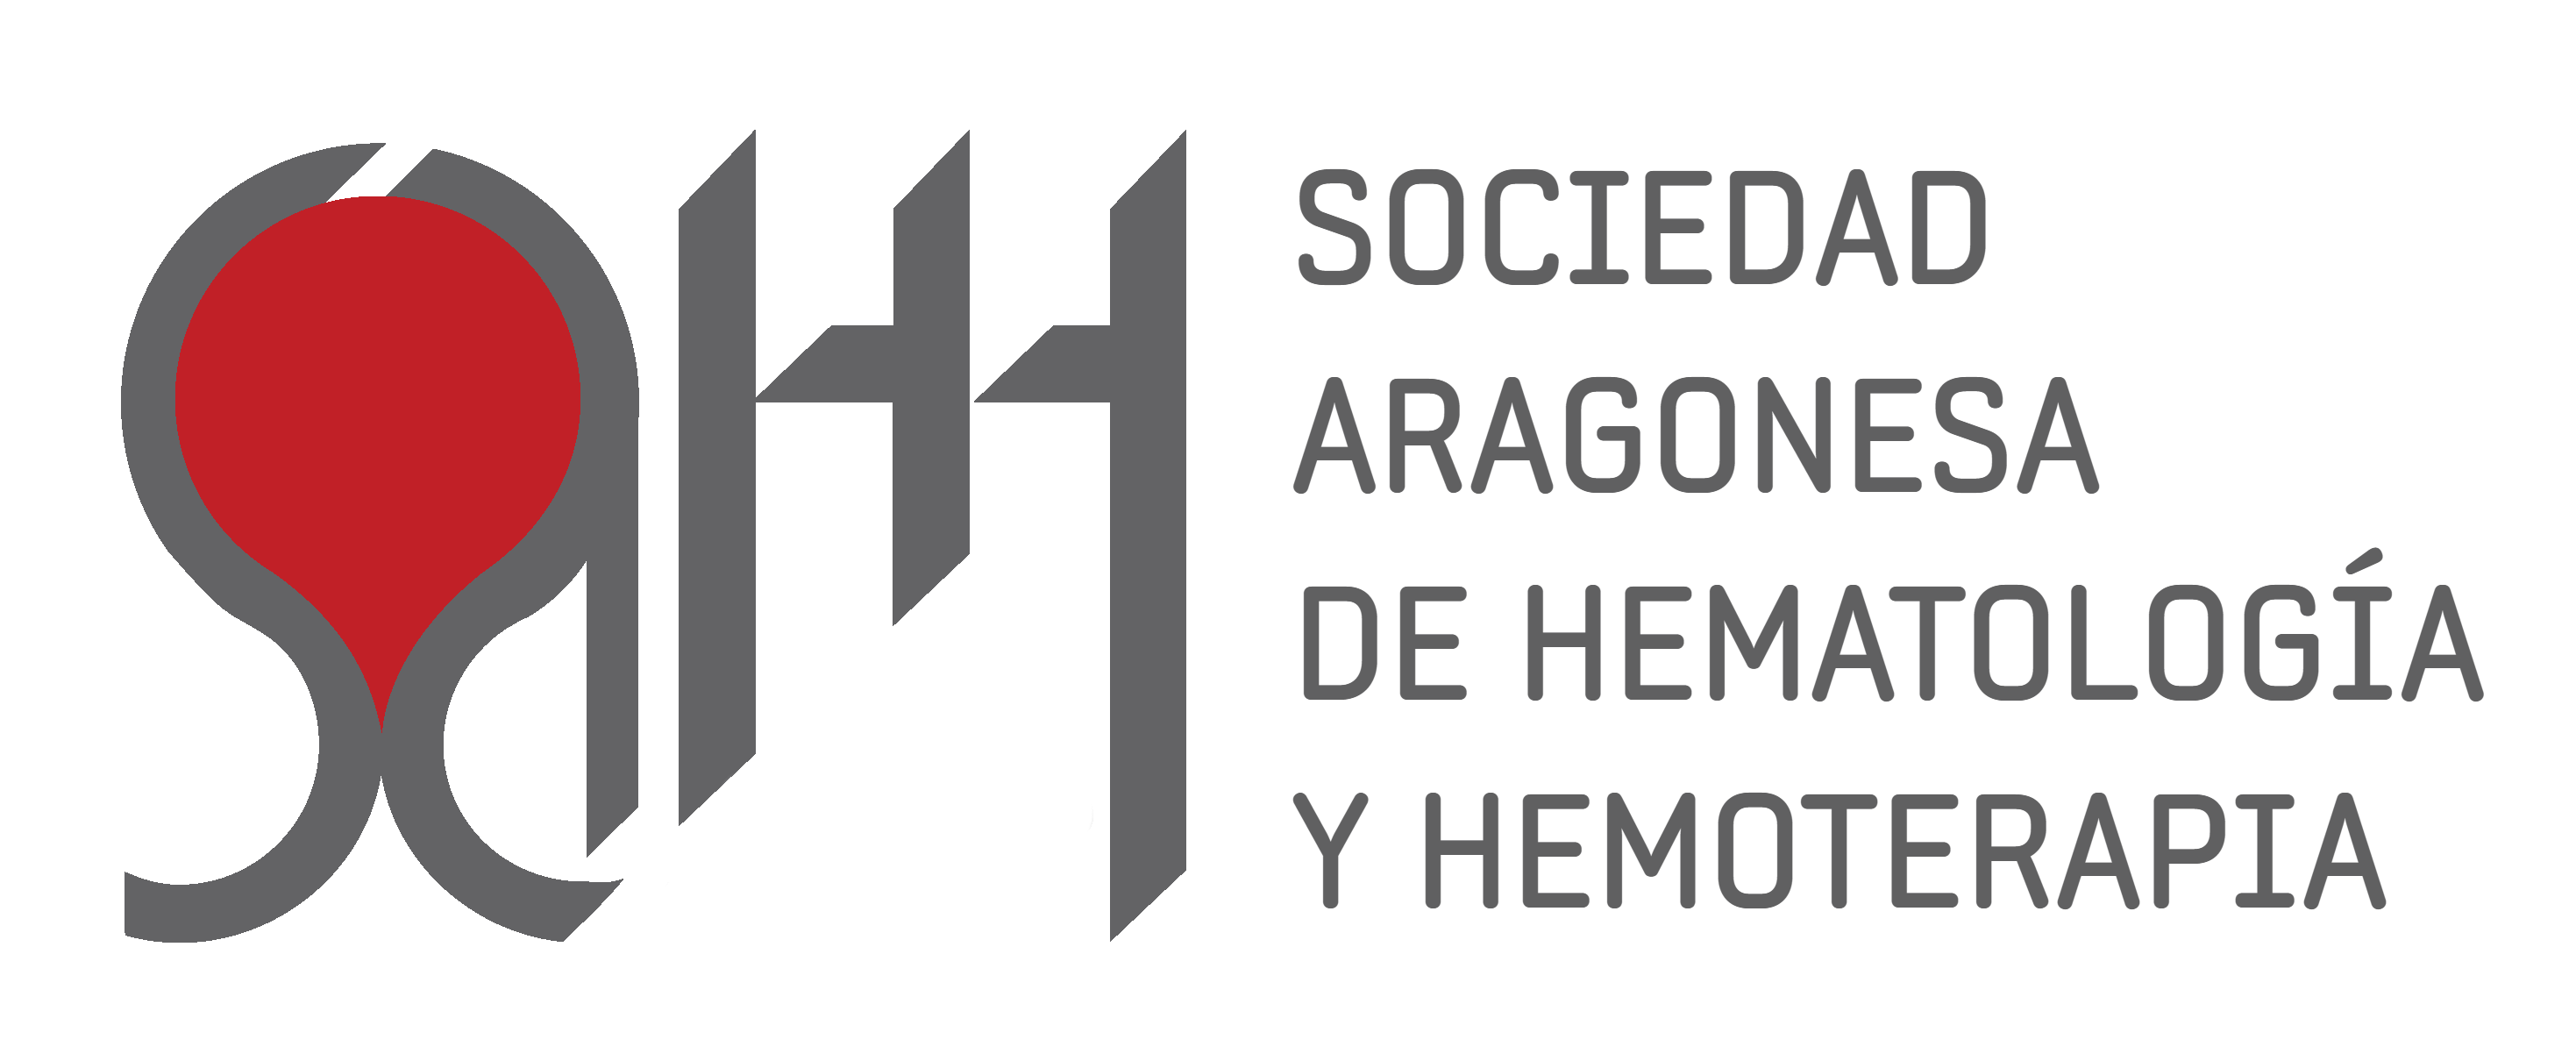 SOCIEDAD ARAGONESA DE HEMATOLOGIA Y HEMOTERAPIA